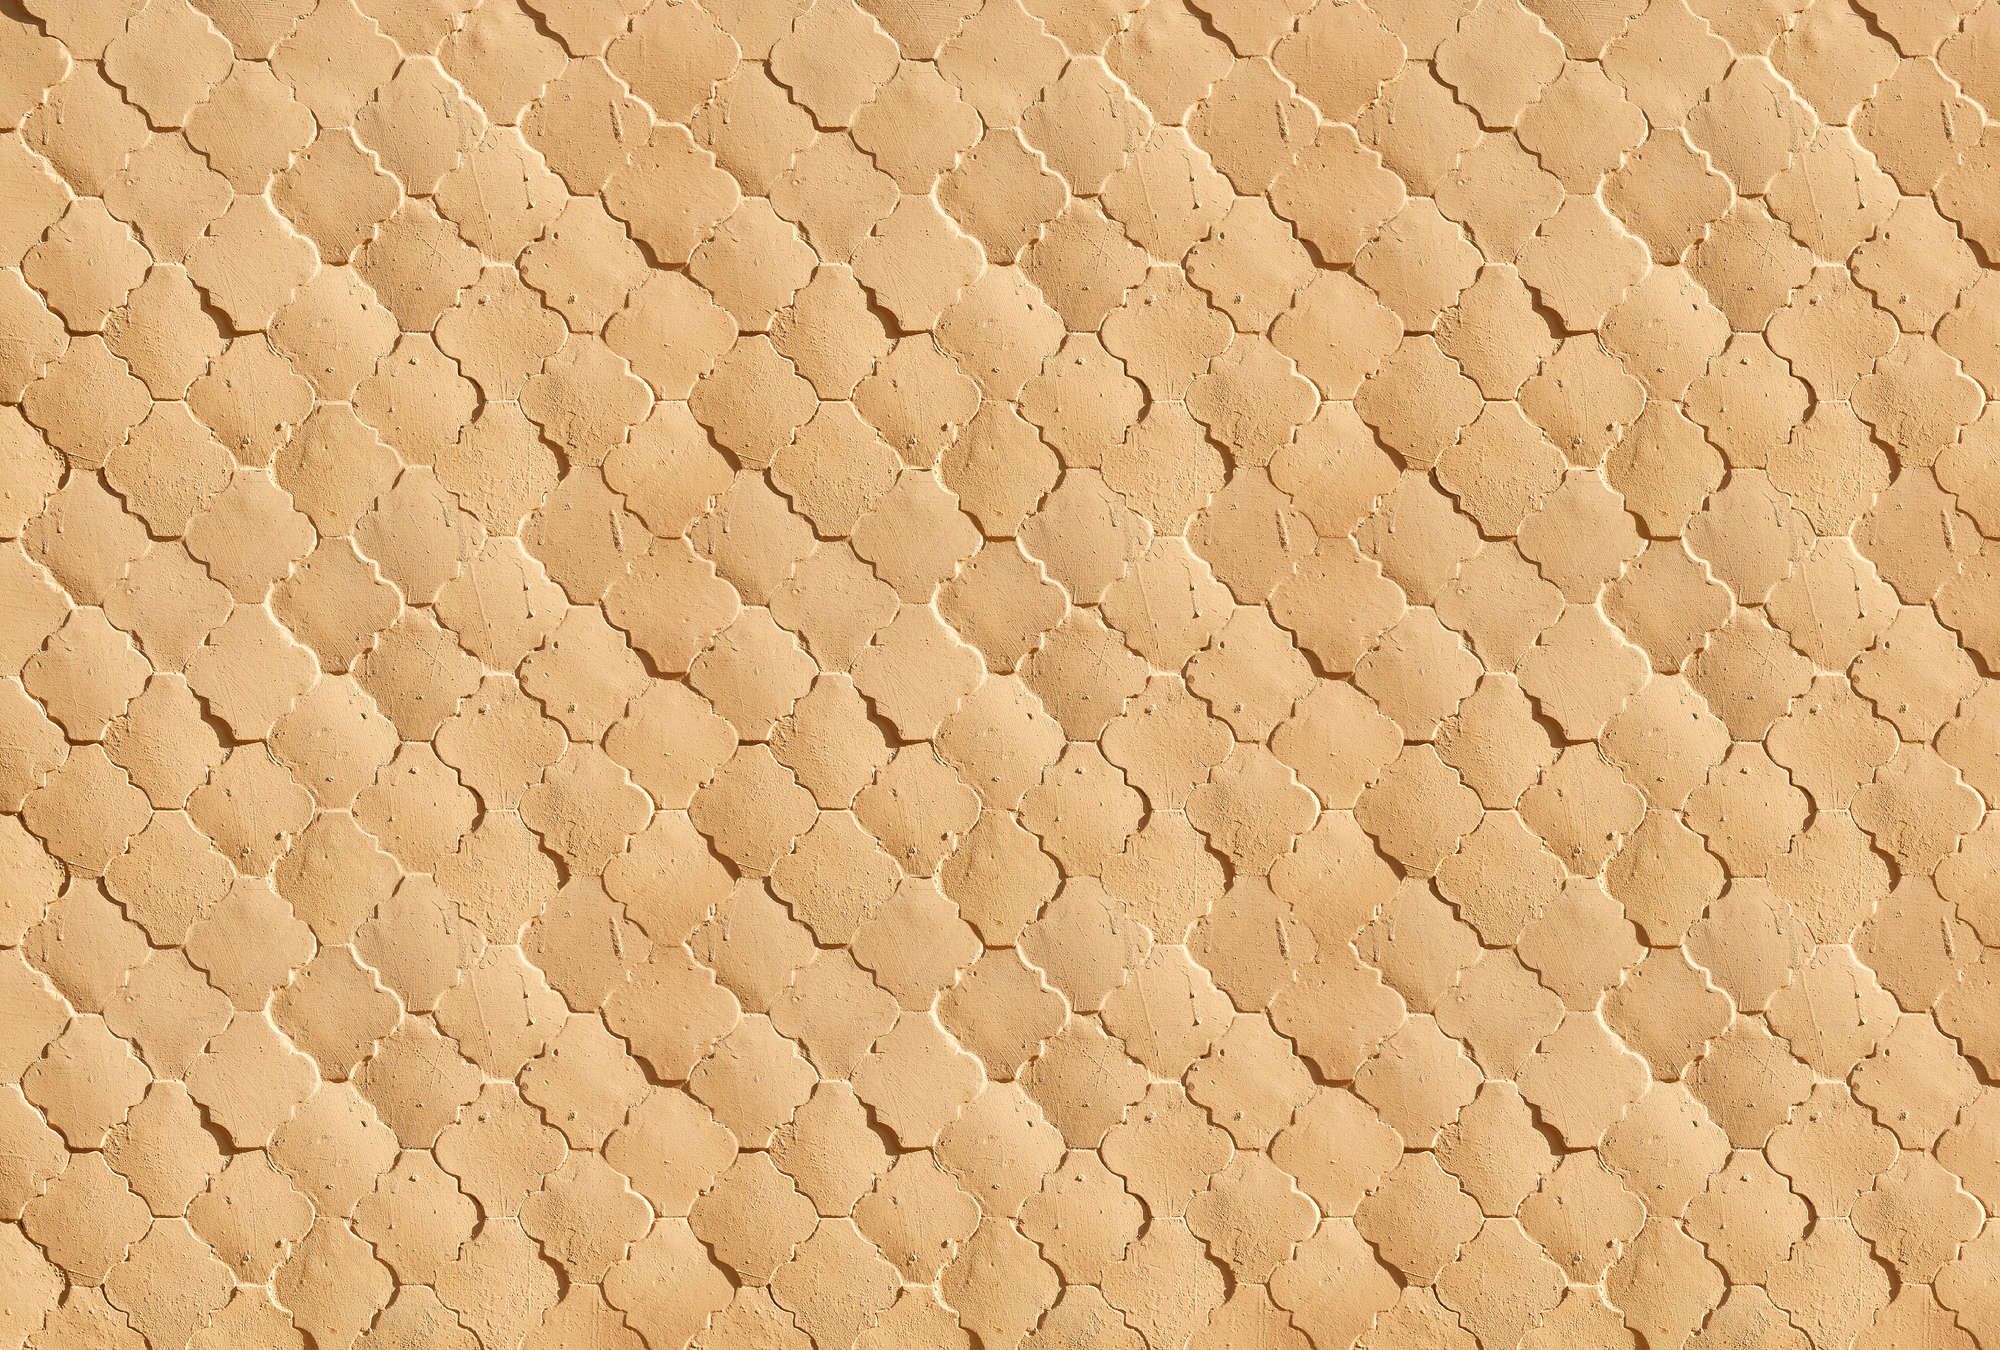             papier peint en papier panoramique »siena« - Motif de carrelage méridional en couleur sable - intissé lisse, légèrement nacré
        